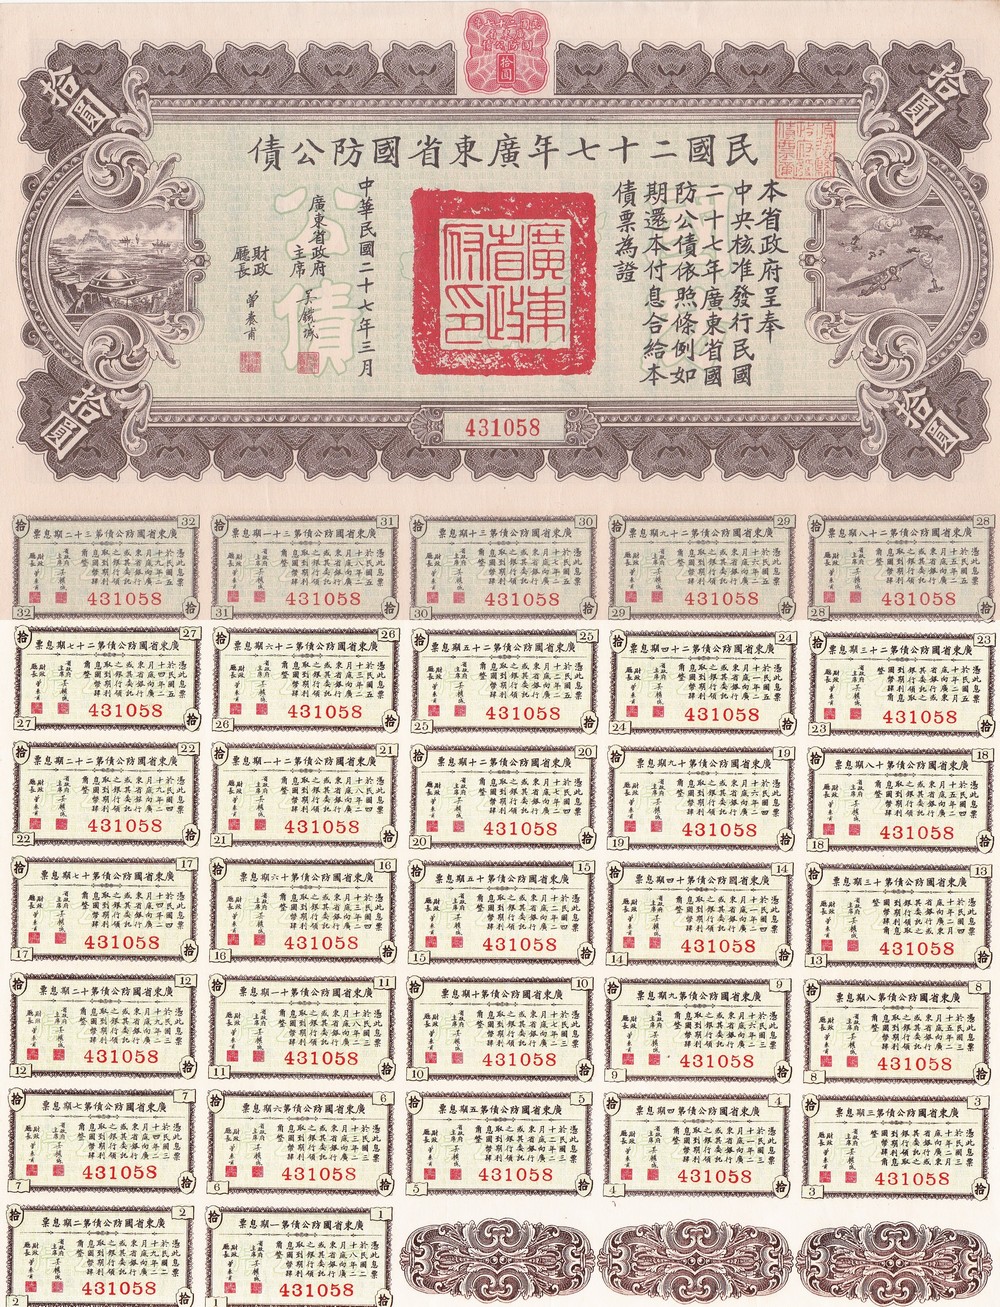 B2643, Kwangtung 4% Defence Loan (Bond), 10 Dollars, China 1938 (Full Coupons)